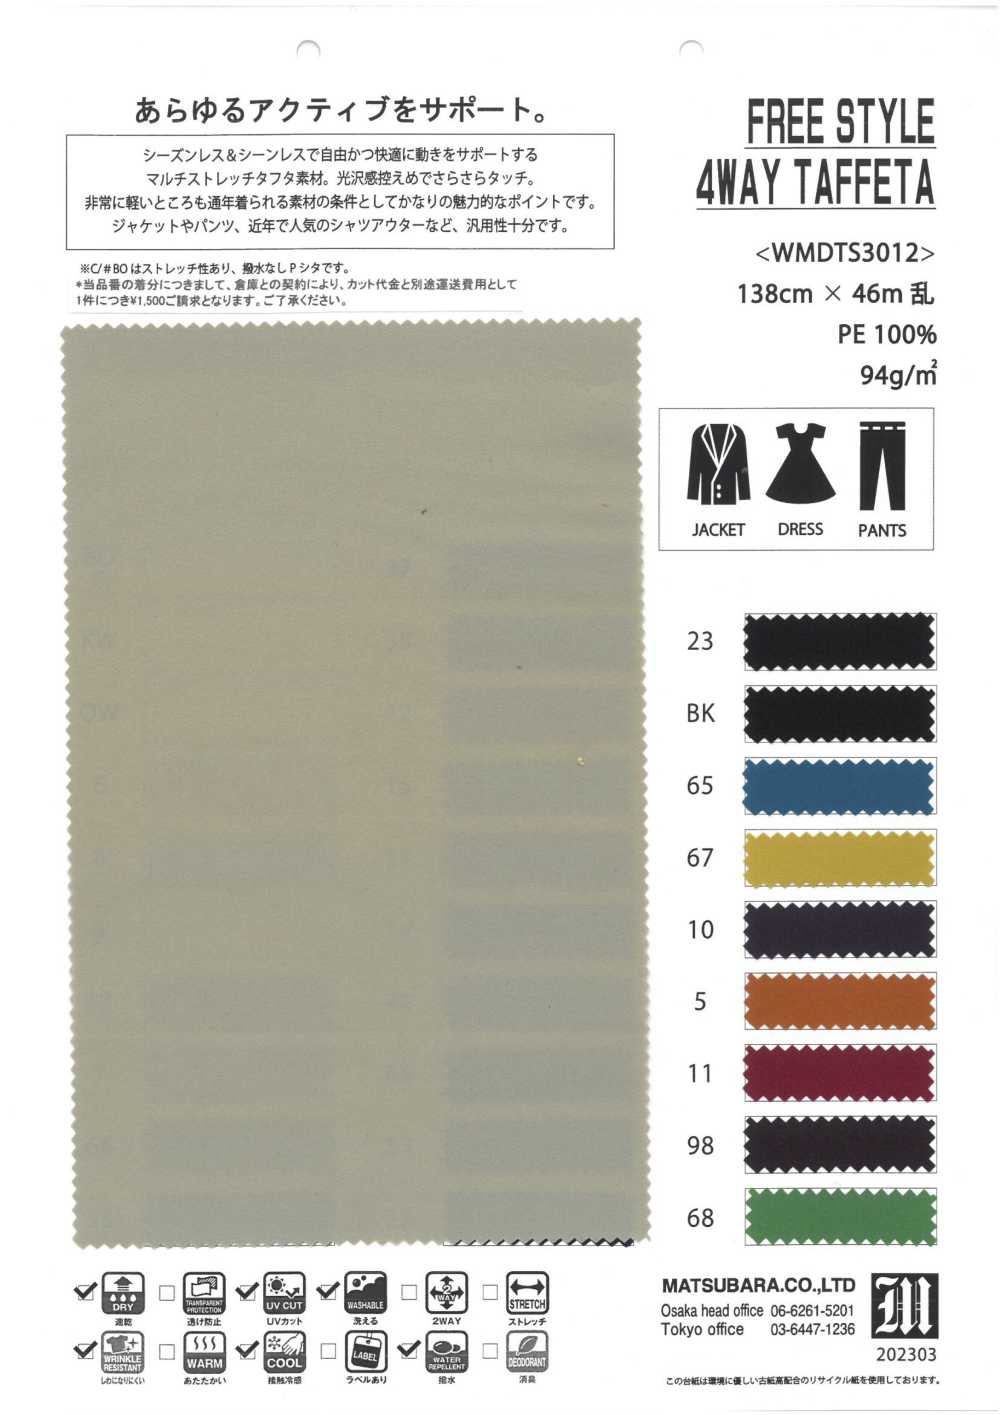 WMDTS3012 TAFFETAS STYLE LIBRE[Fabrication De Textile] Matsubara